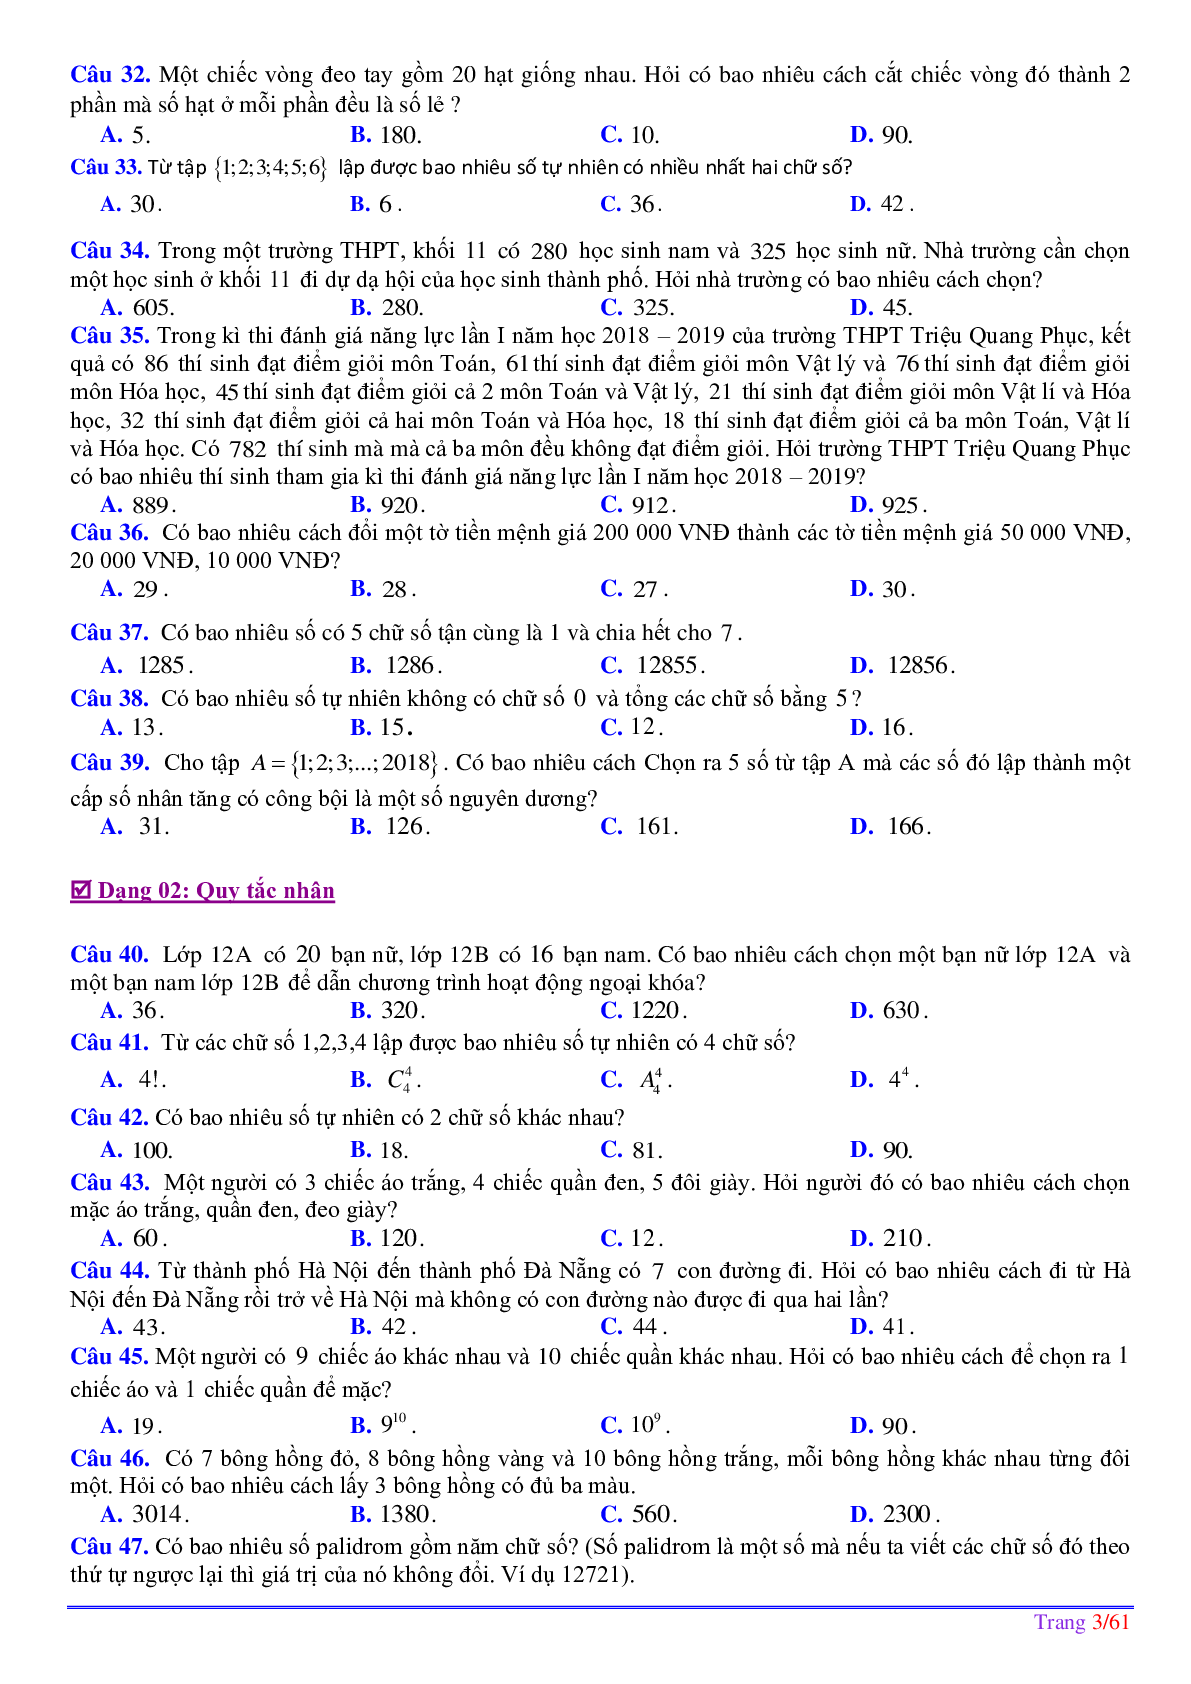 252 bài toán phép đếm ôn thi tốt nghiệp THPT (trang 4)